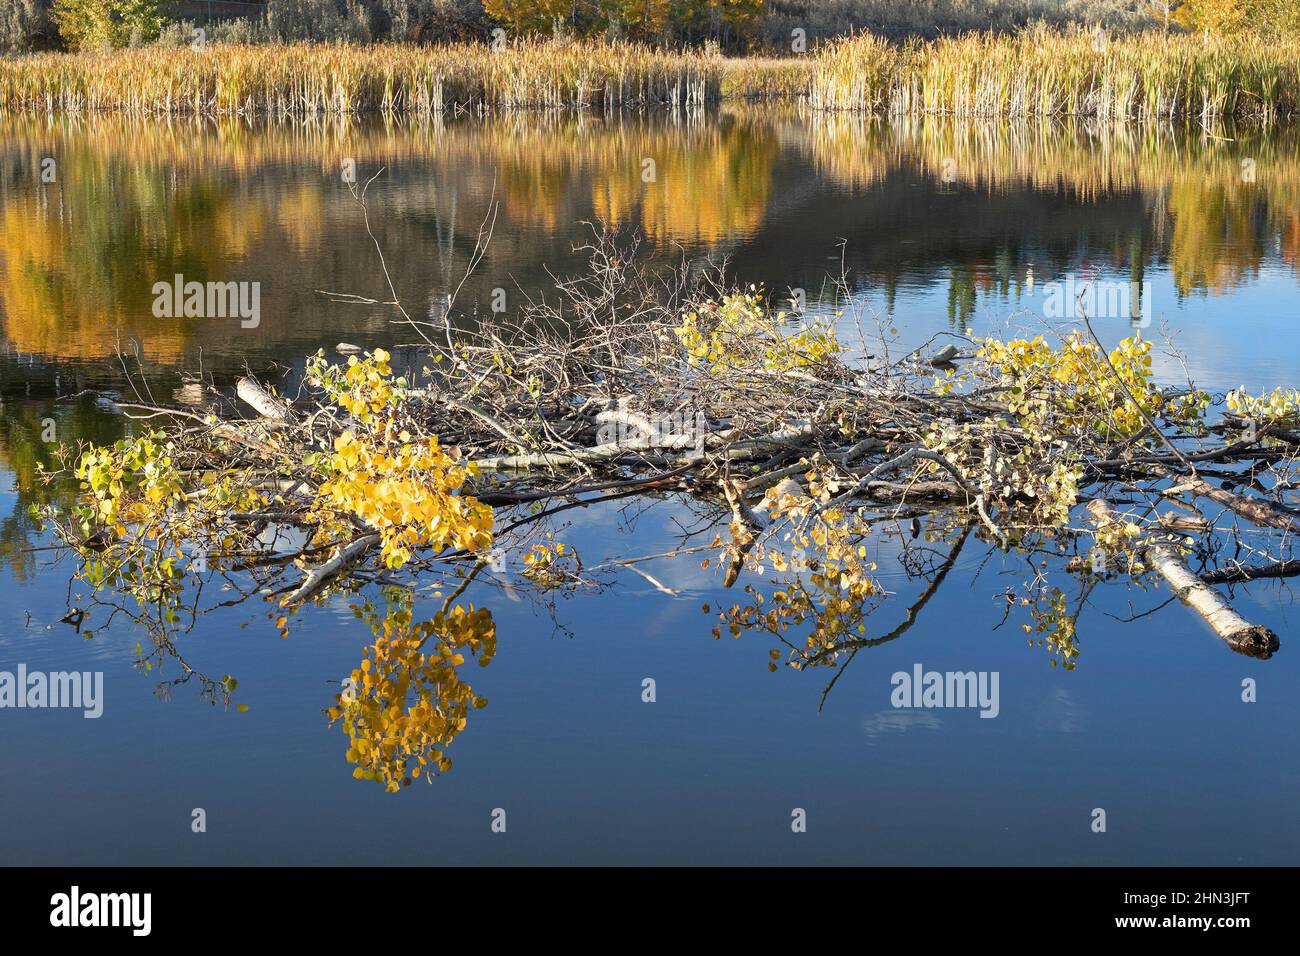 Bibers Nahrungslager aus Espenzweigen und Blättern, die im Herbst in einem Teich gelagert wurden, um bei kaltem Wetter Nahrung zu liefern. Populus tremuloides. Stockfoto